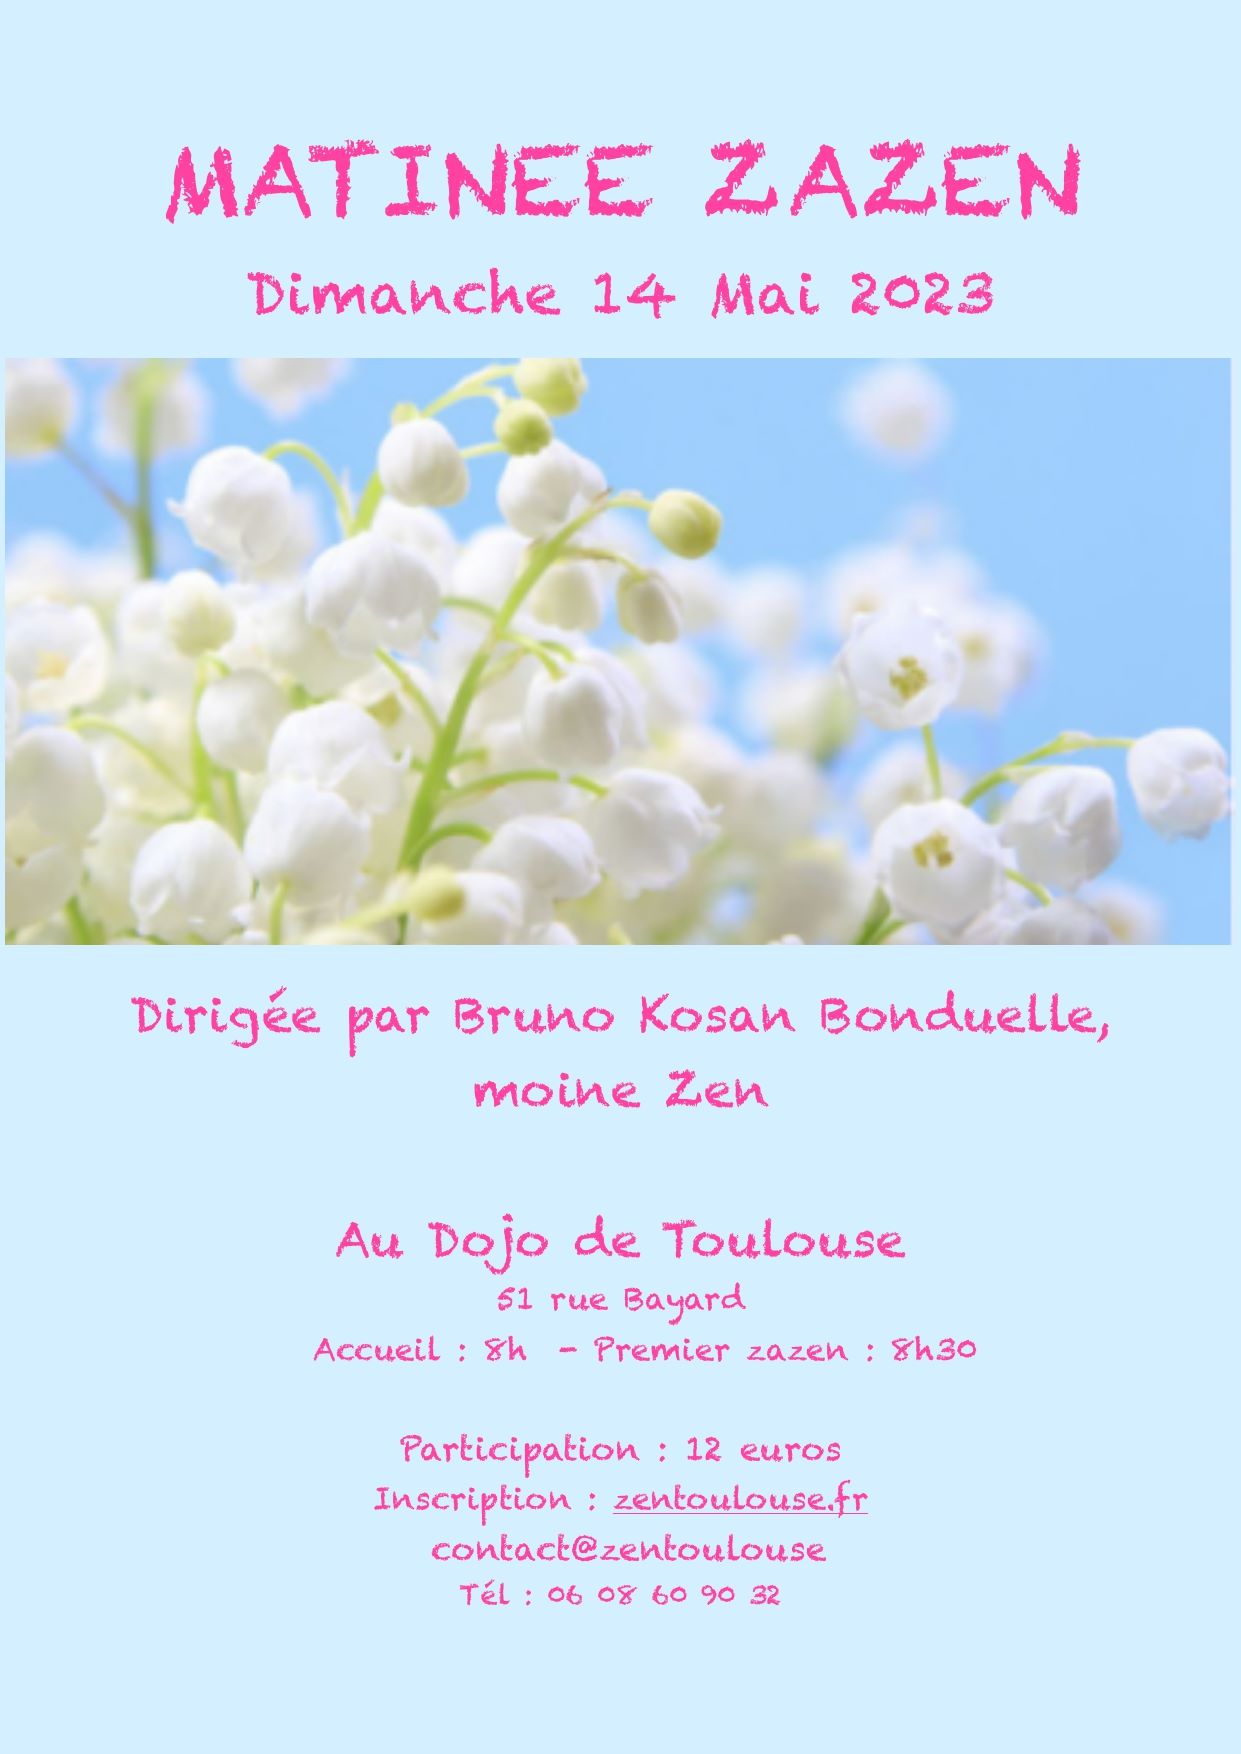 matinée de zazen au Dojo de Toulouse le 14 mai 2023